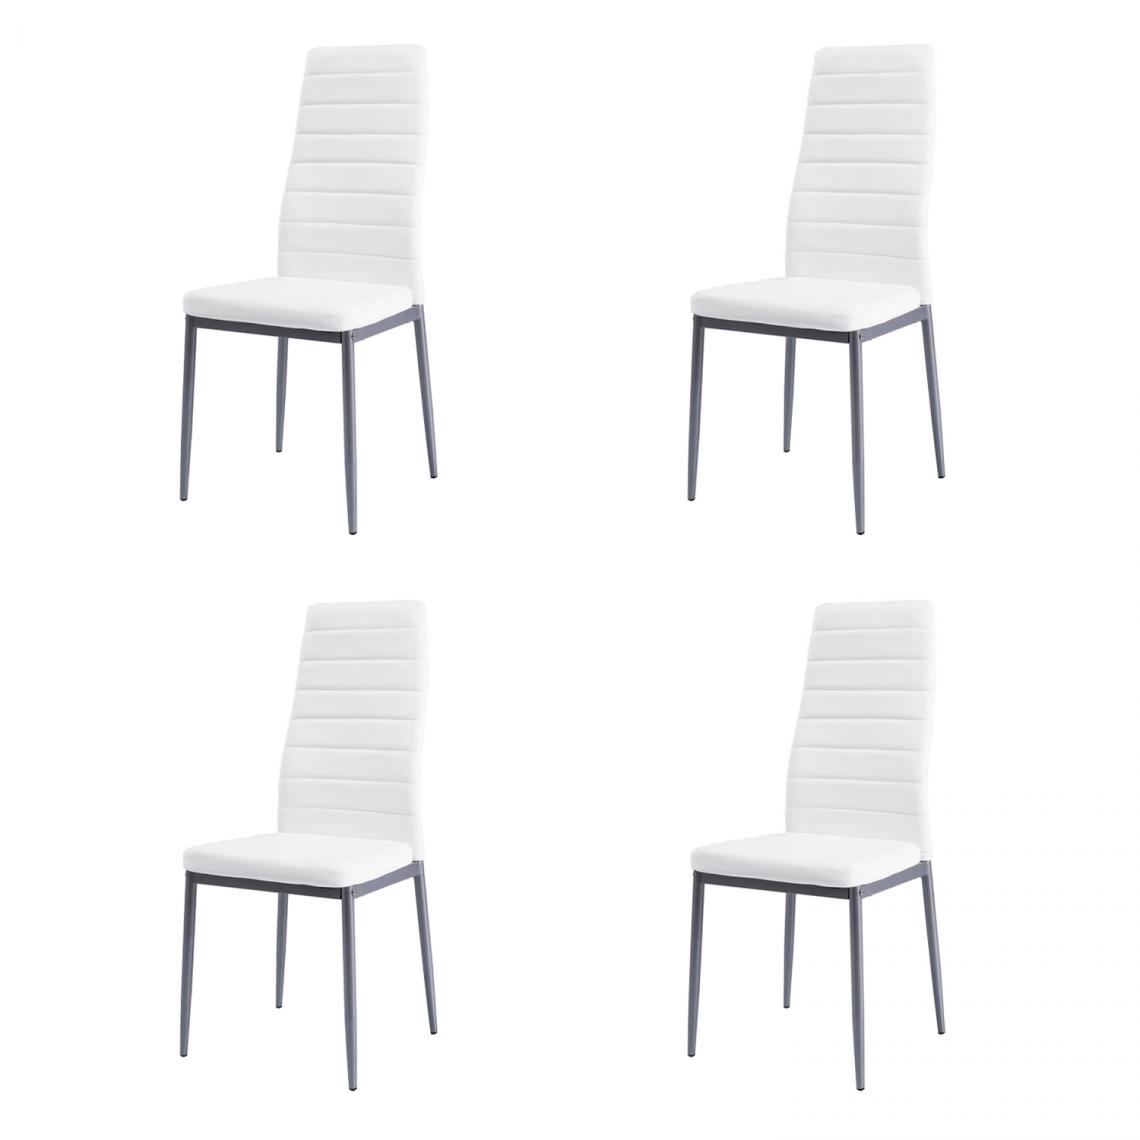 Hucoco - WERI - Lot de 4 chaises minimalistes - 96x40x38 cm - Revêtement similicuir - Chaise salon - Blanc - Chaises